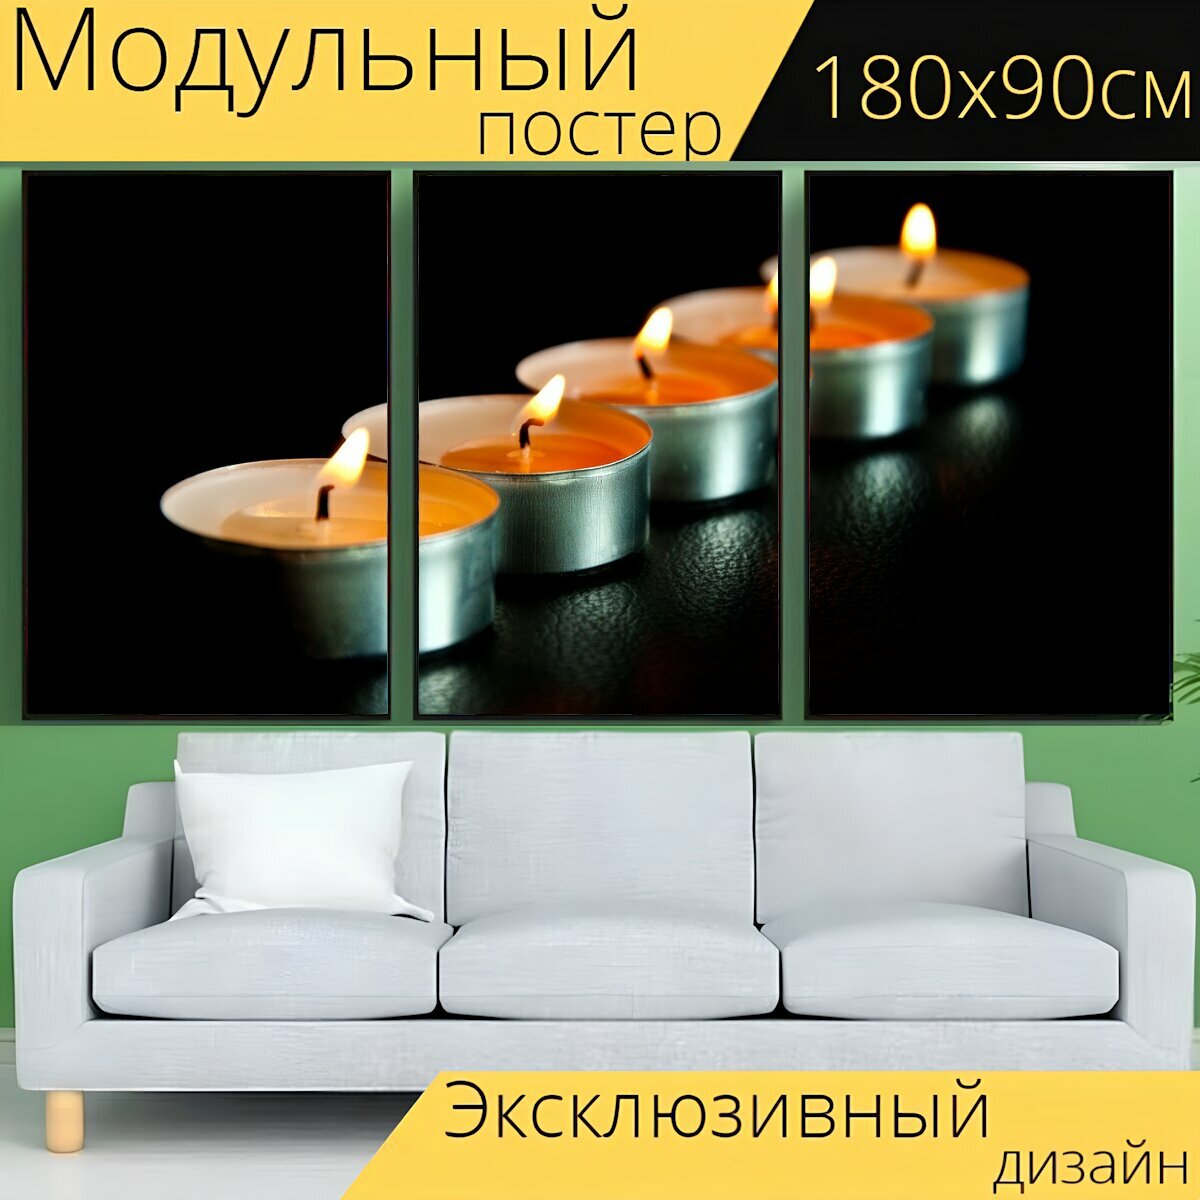 Модульный постер "Свечи, черный фон, свет" 180 x 90 см. для интерьера